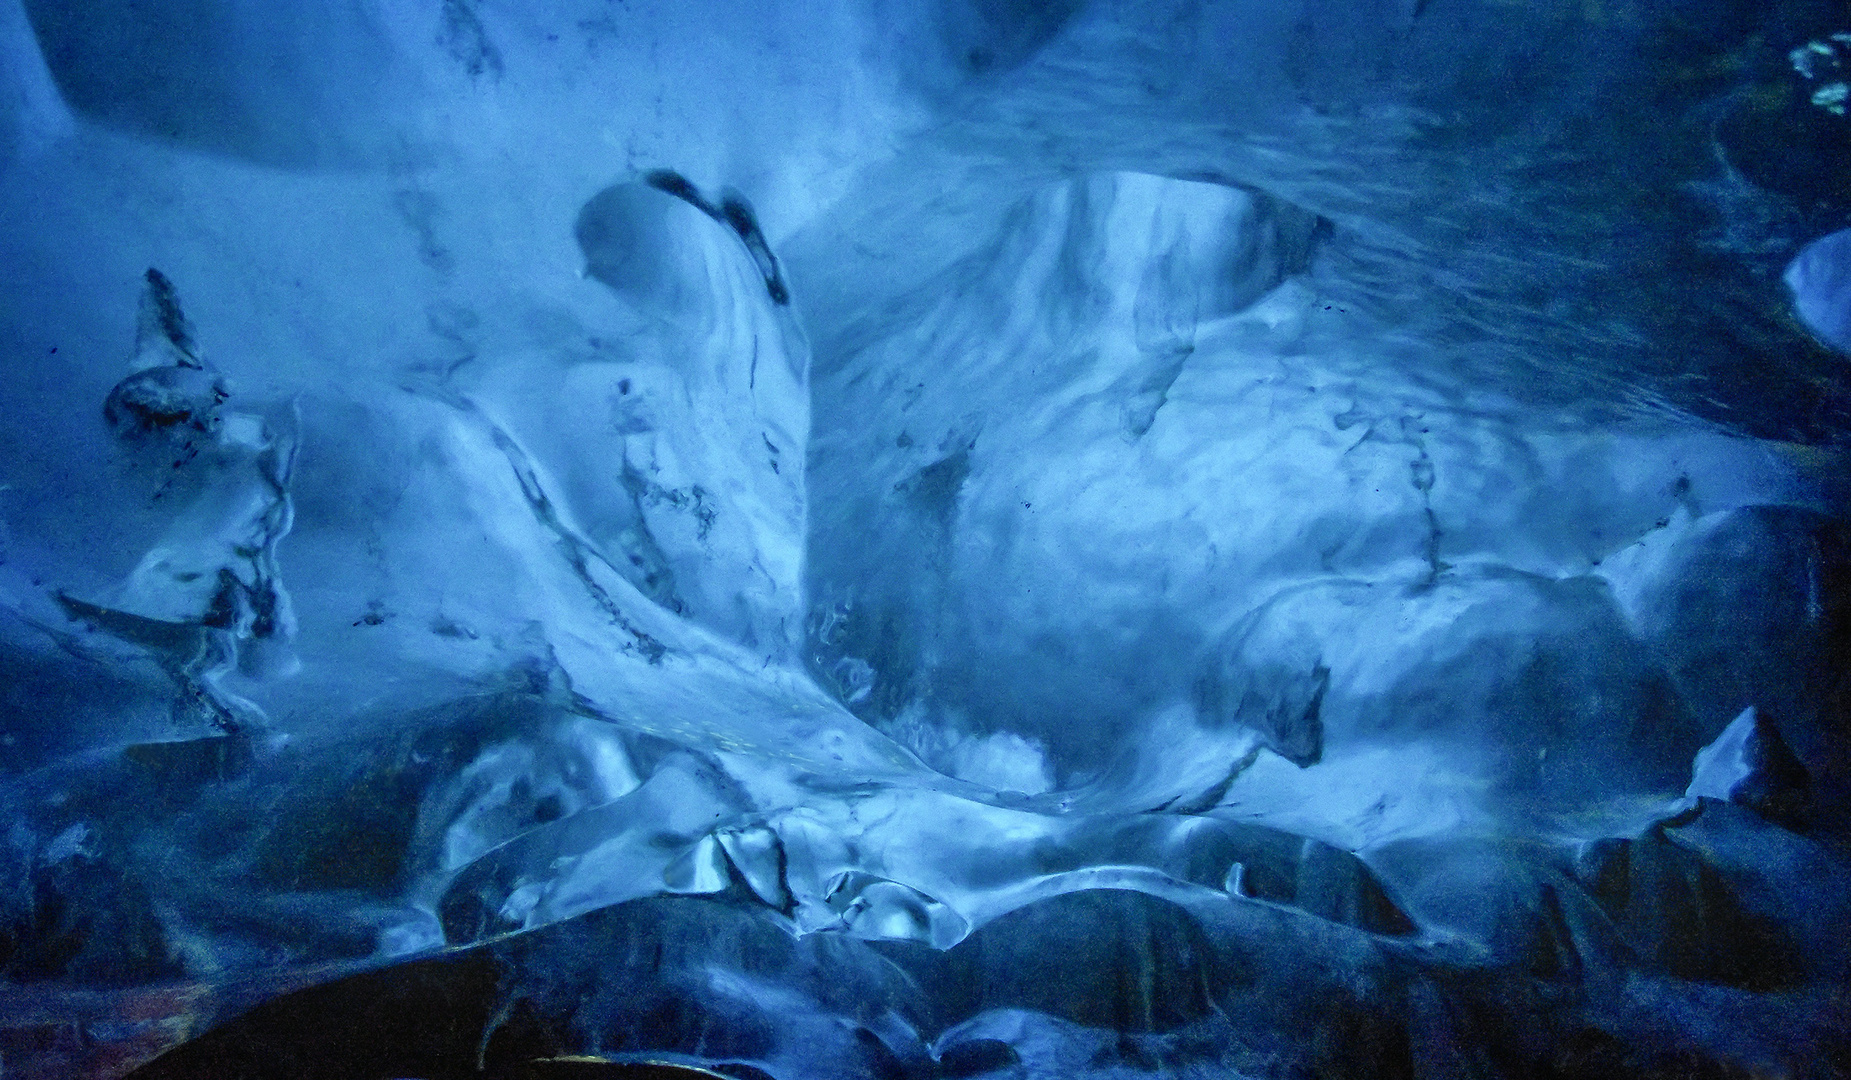 Eishöhle 3